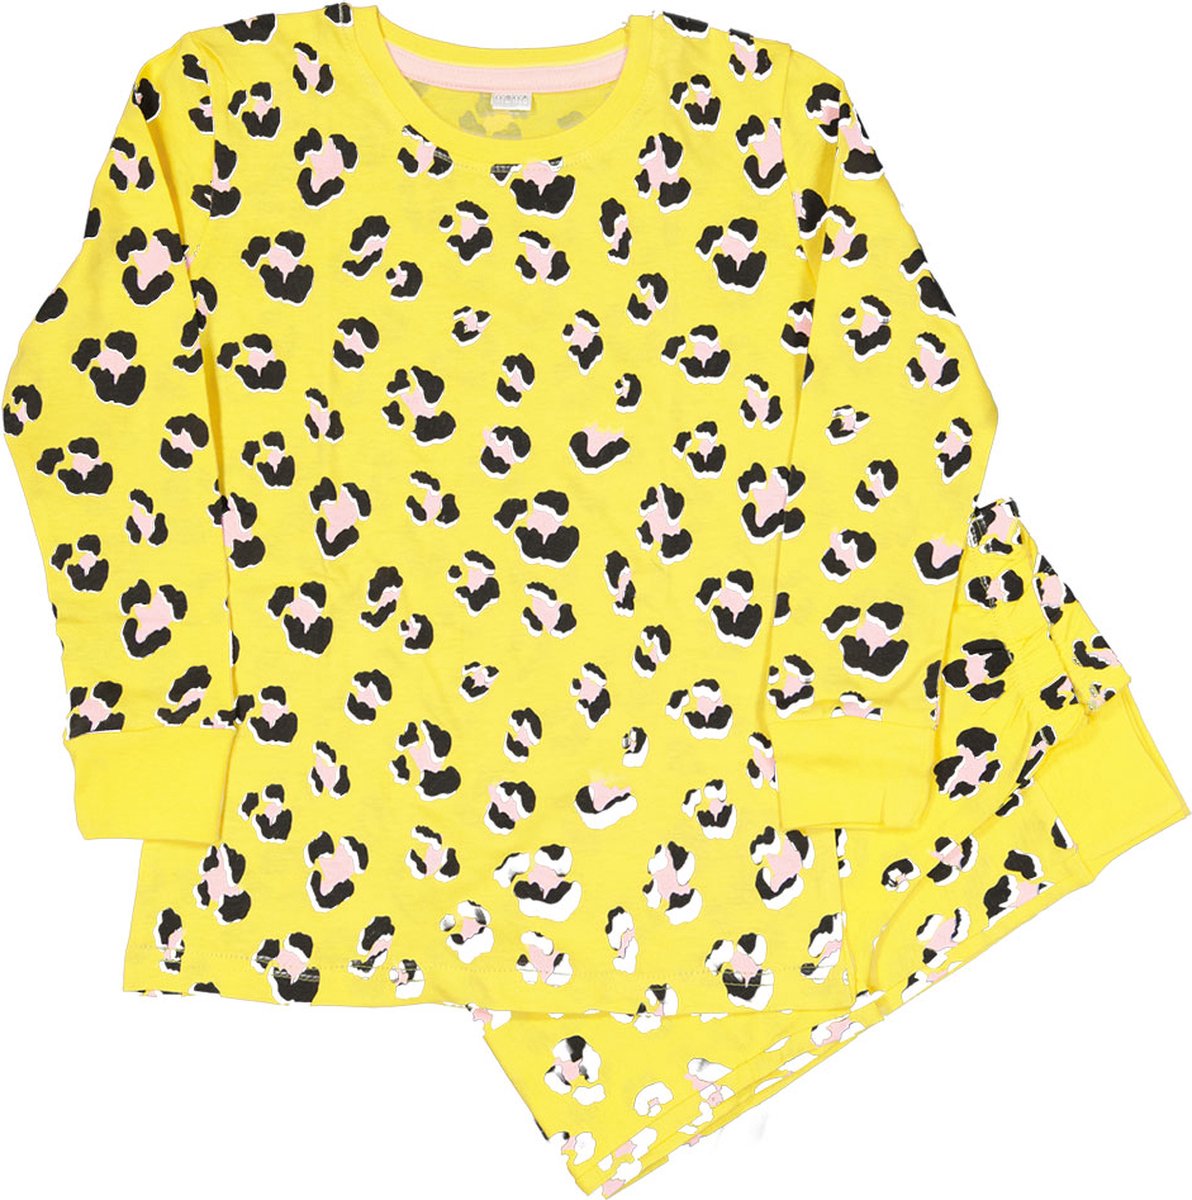 Zeeman kinder meisjes pyjama set - geel - maat 92